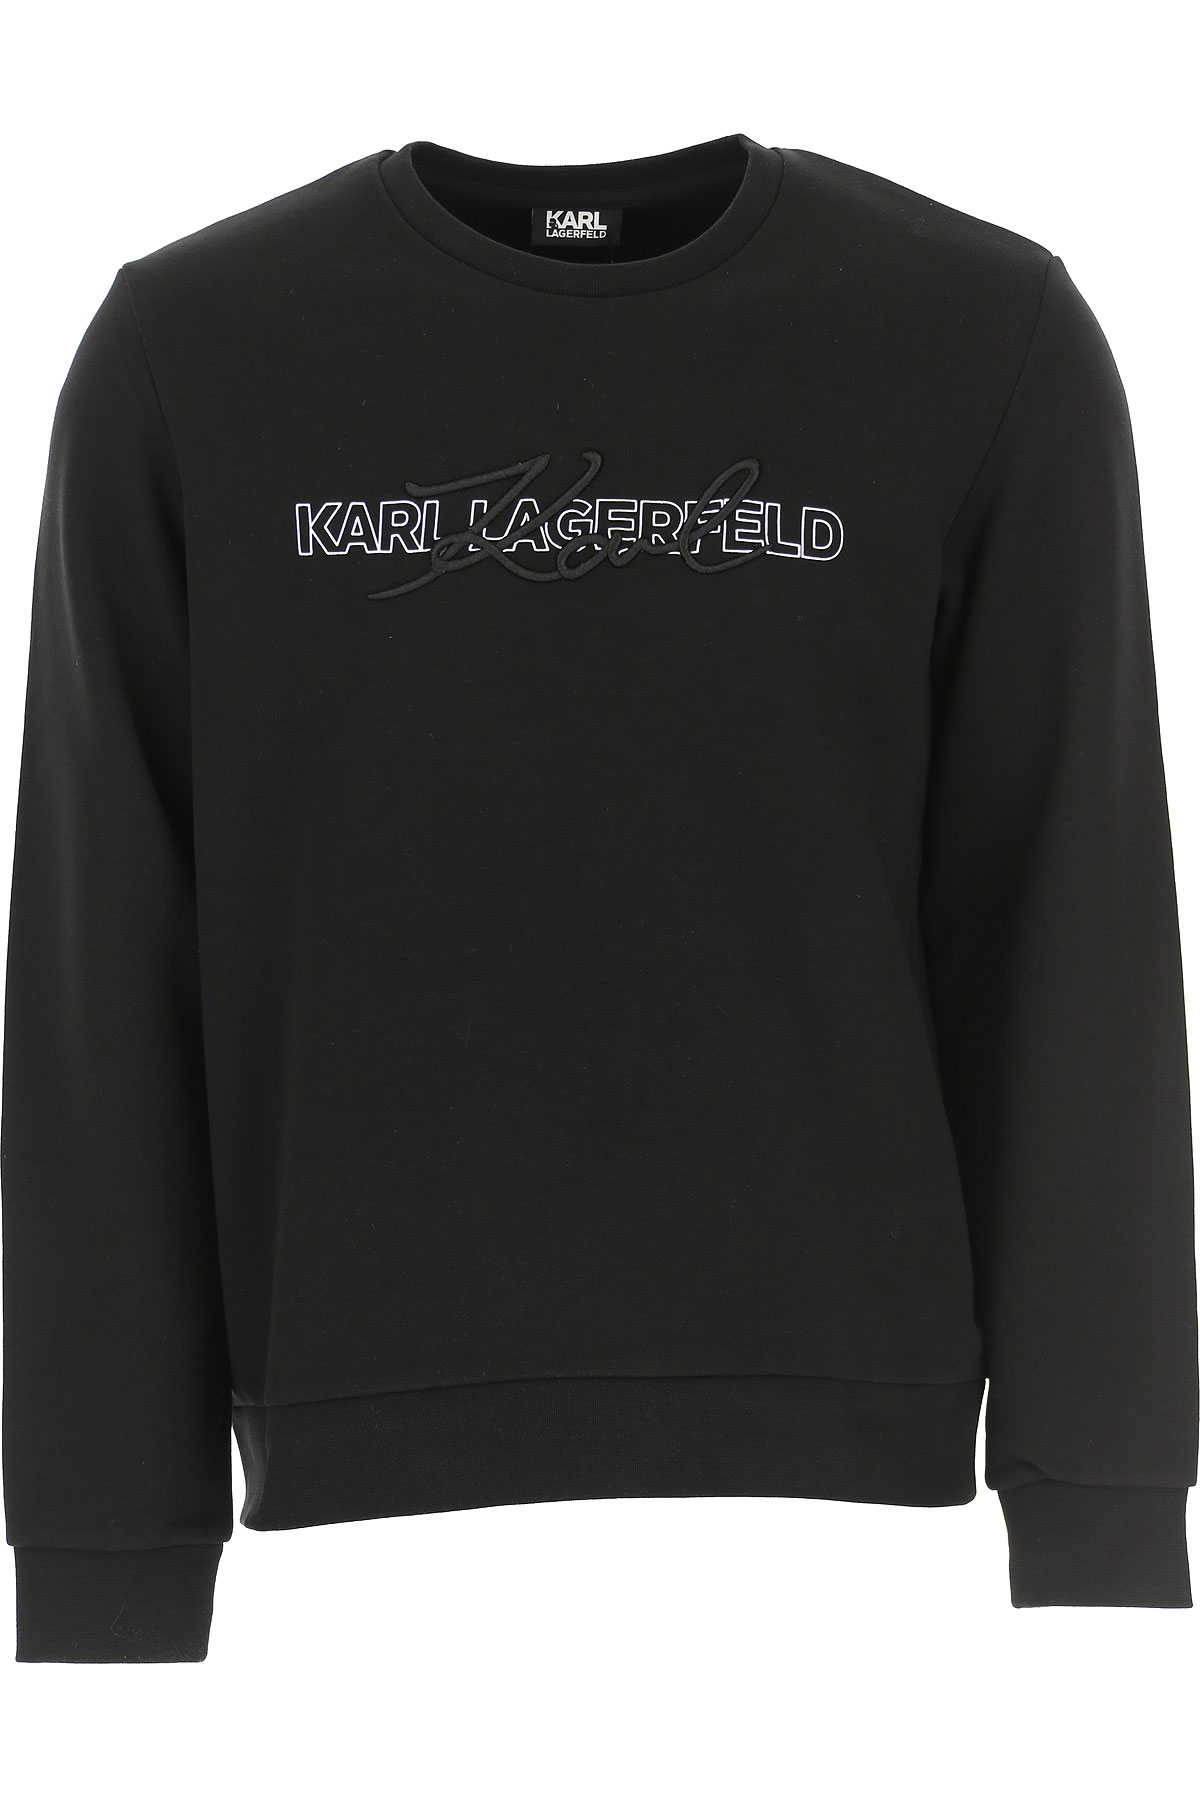 Karl Lagerfeld Sweatshirt für Herren, Kapuzenpulli, Hoodie, Sweats Günstig im Sale, Schwarz, Baumwolle, 2017, L M